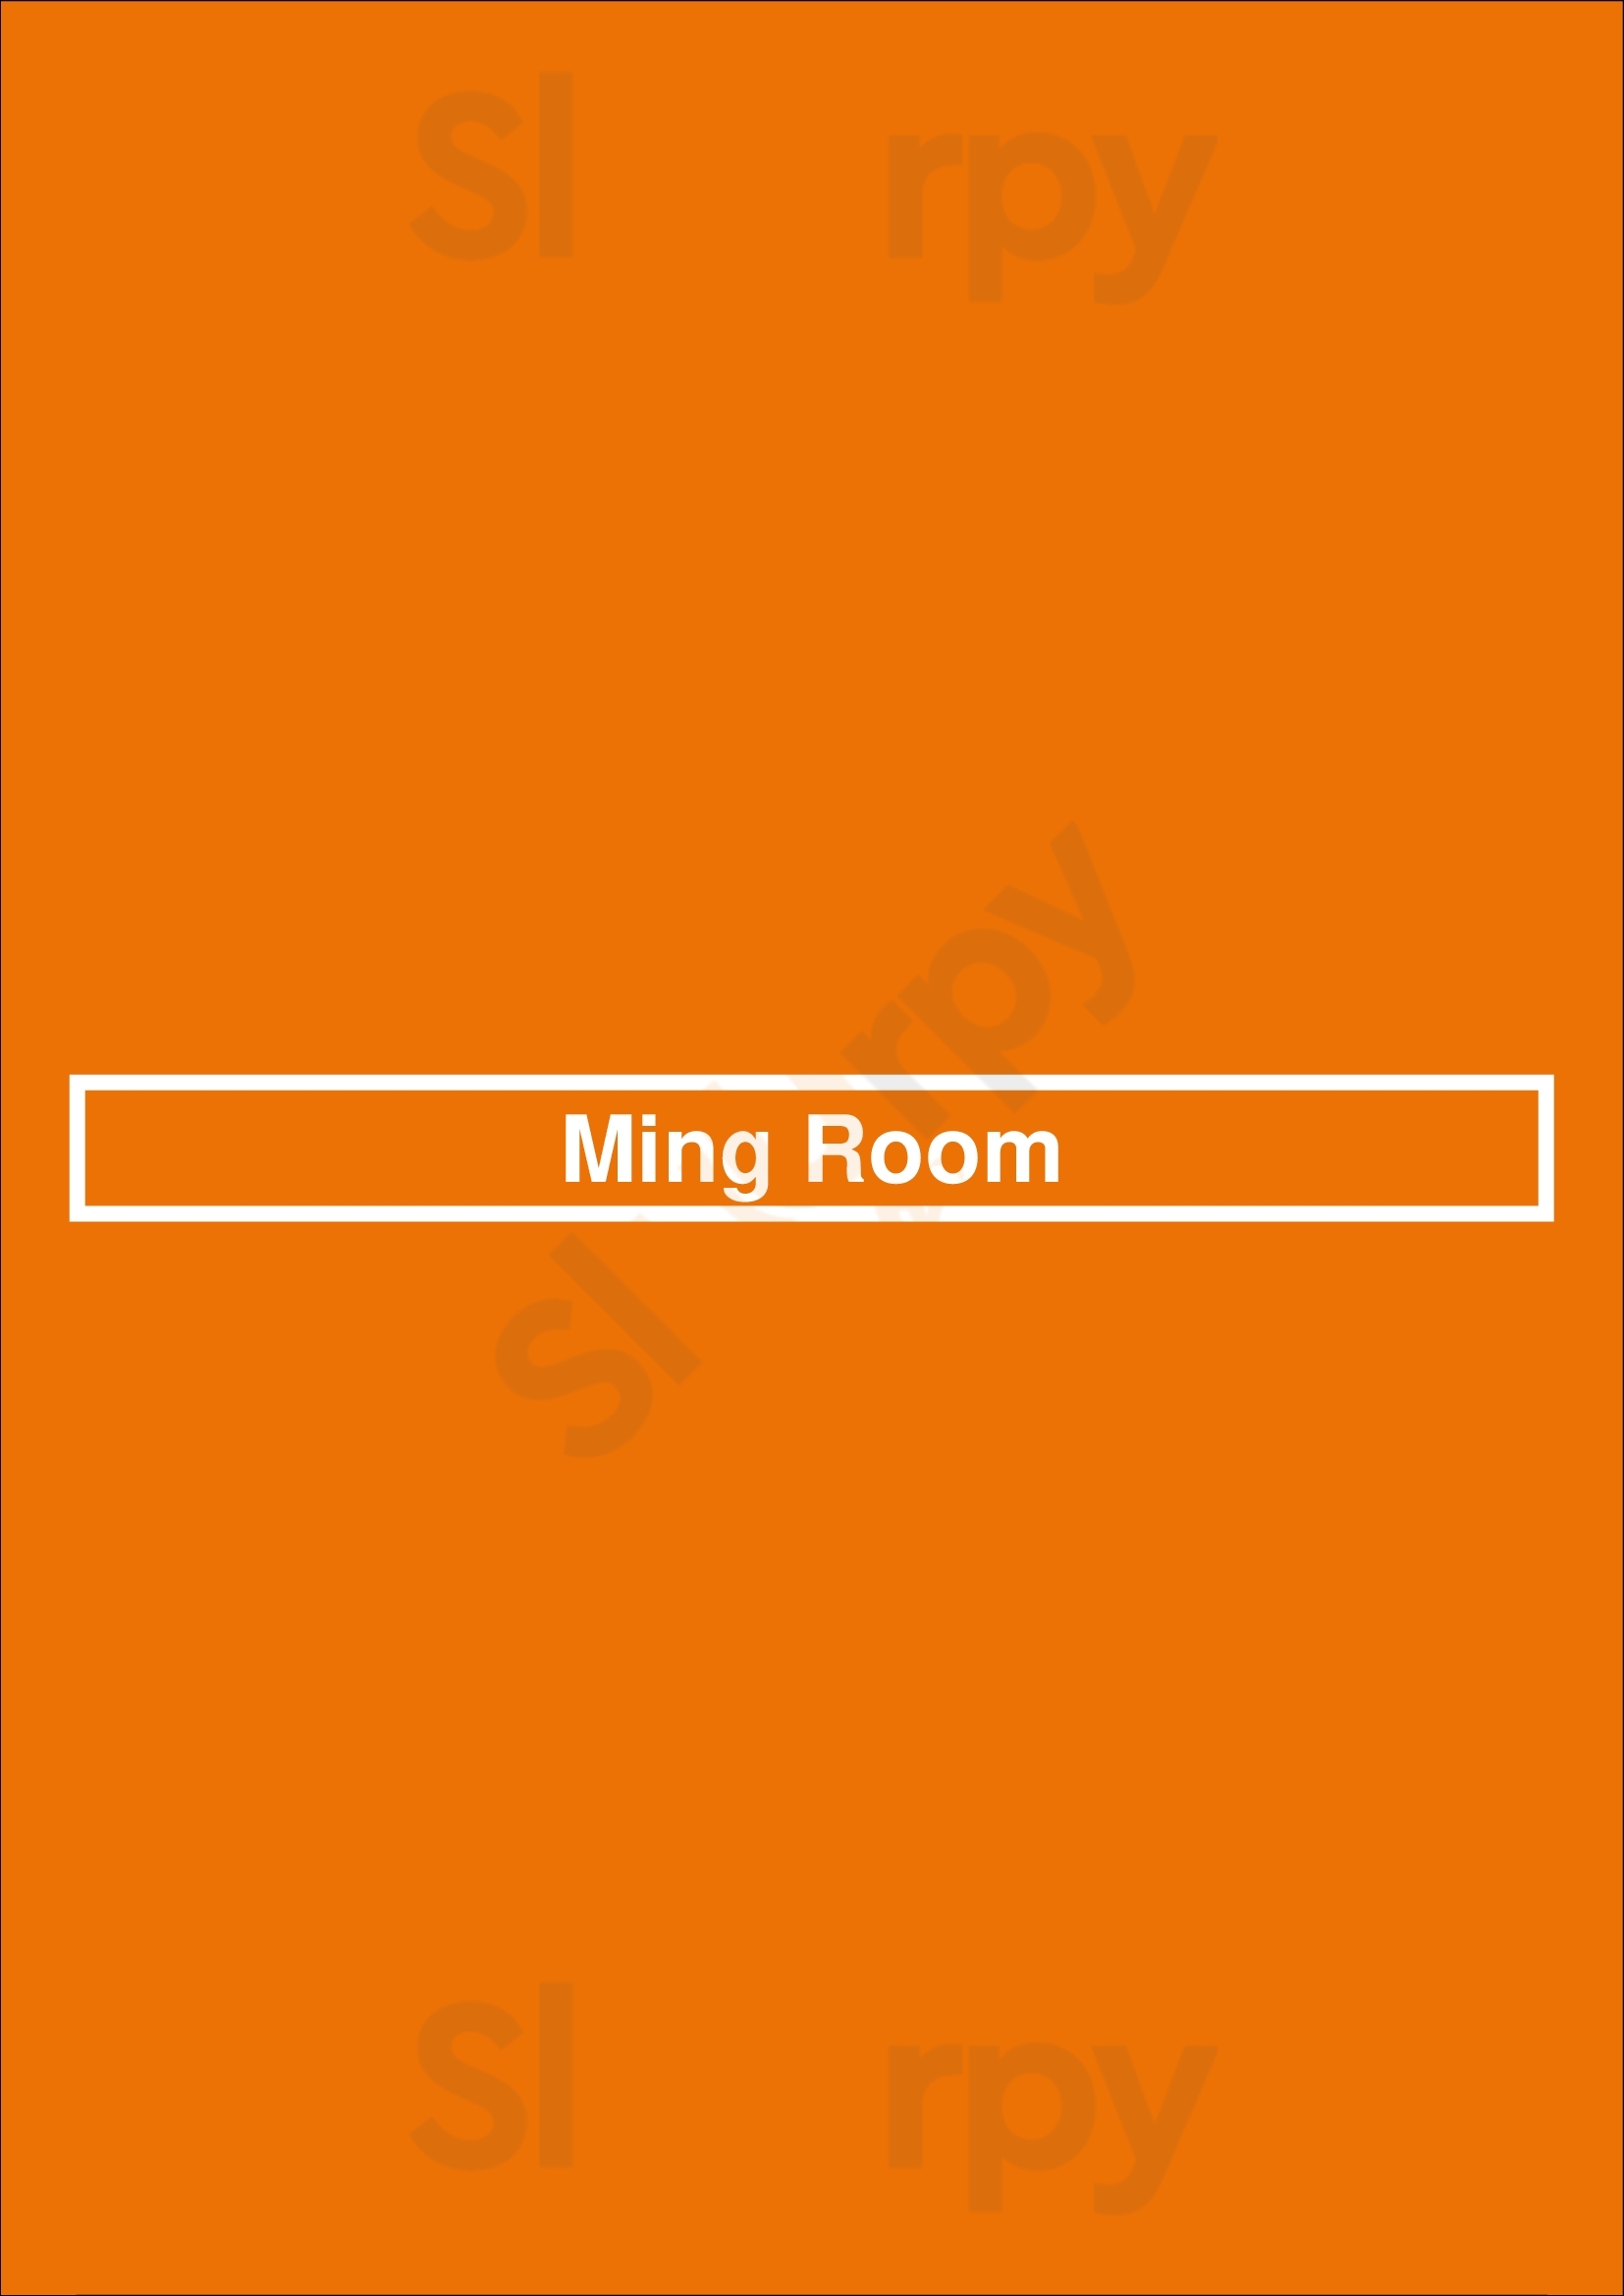 Ming Room Mississauga Menu - 1